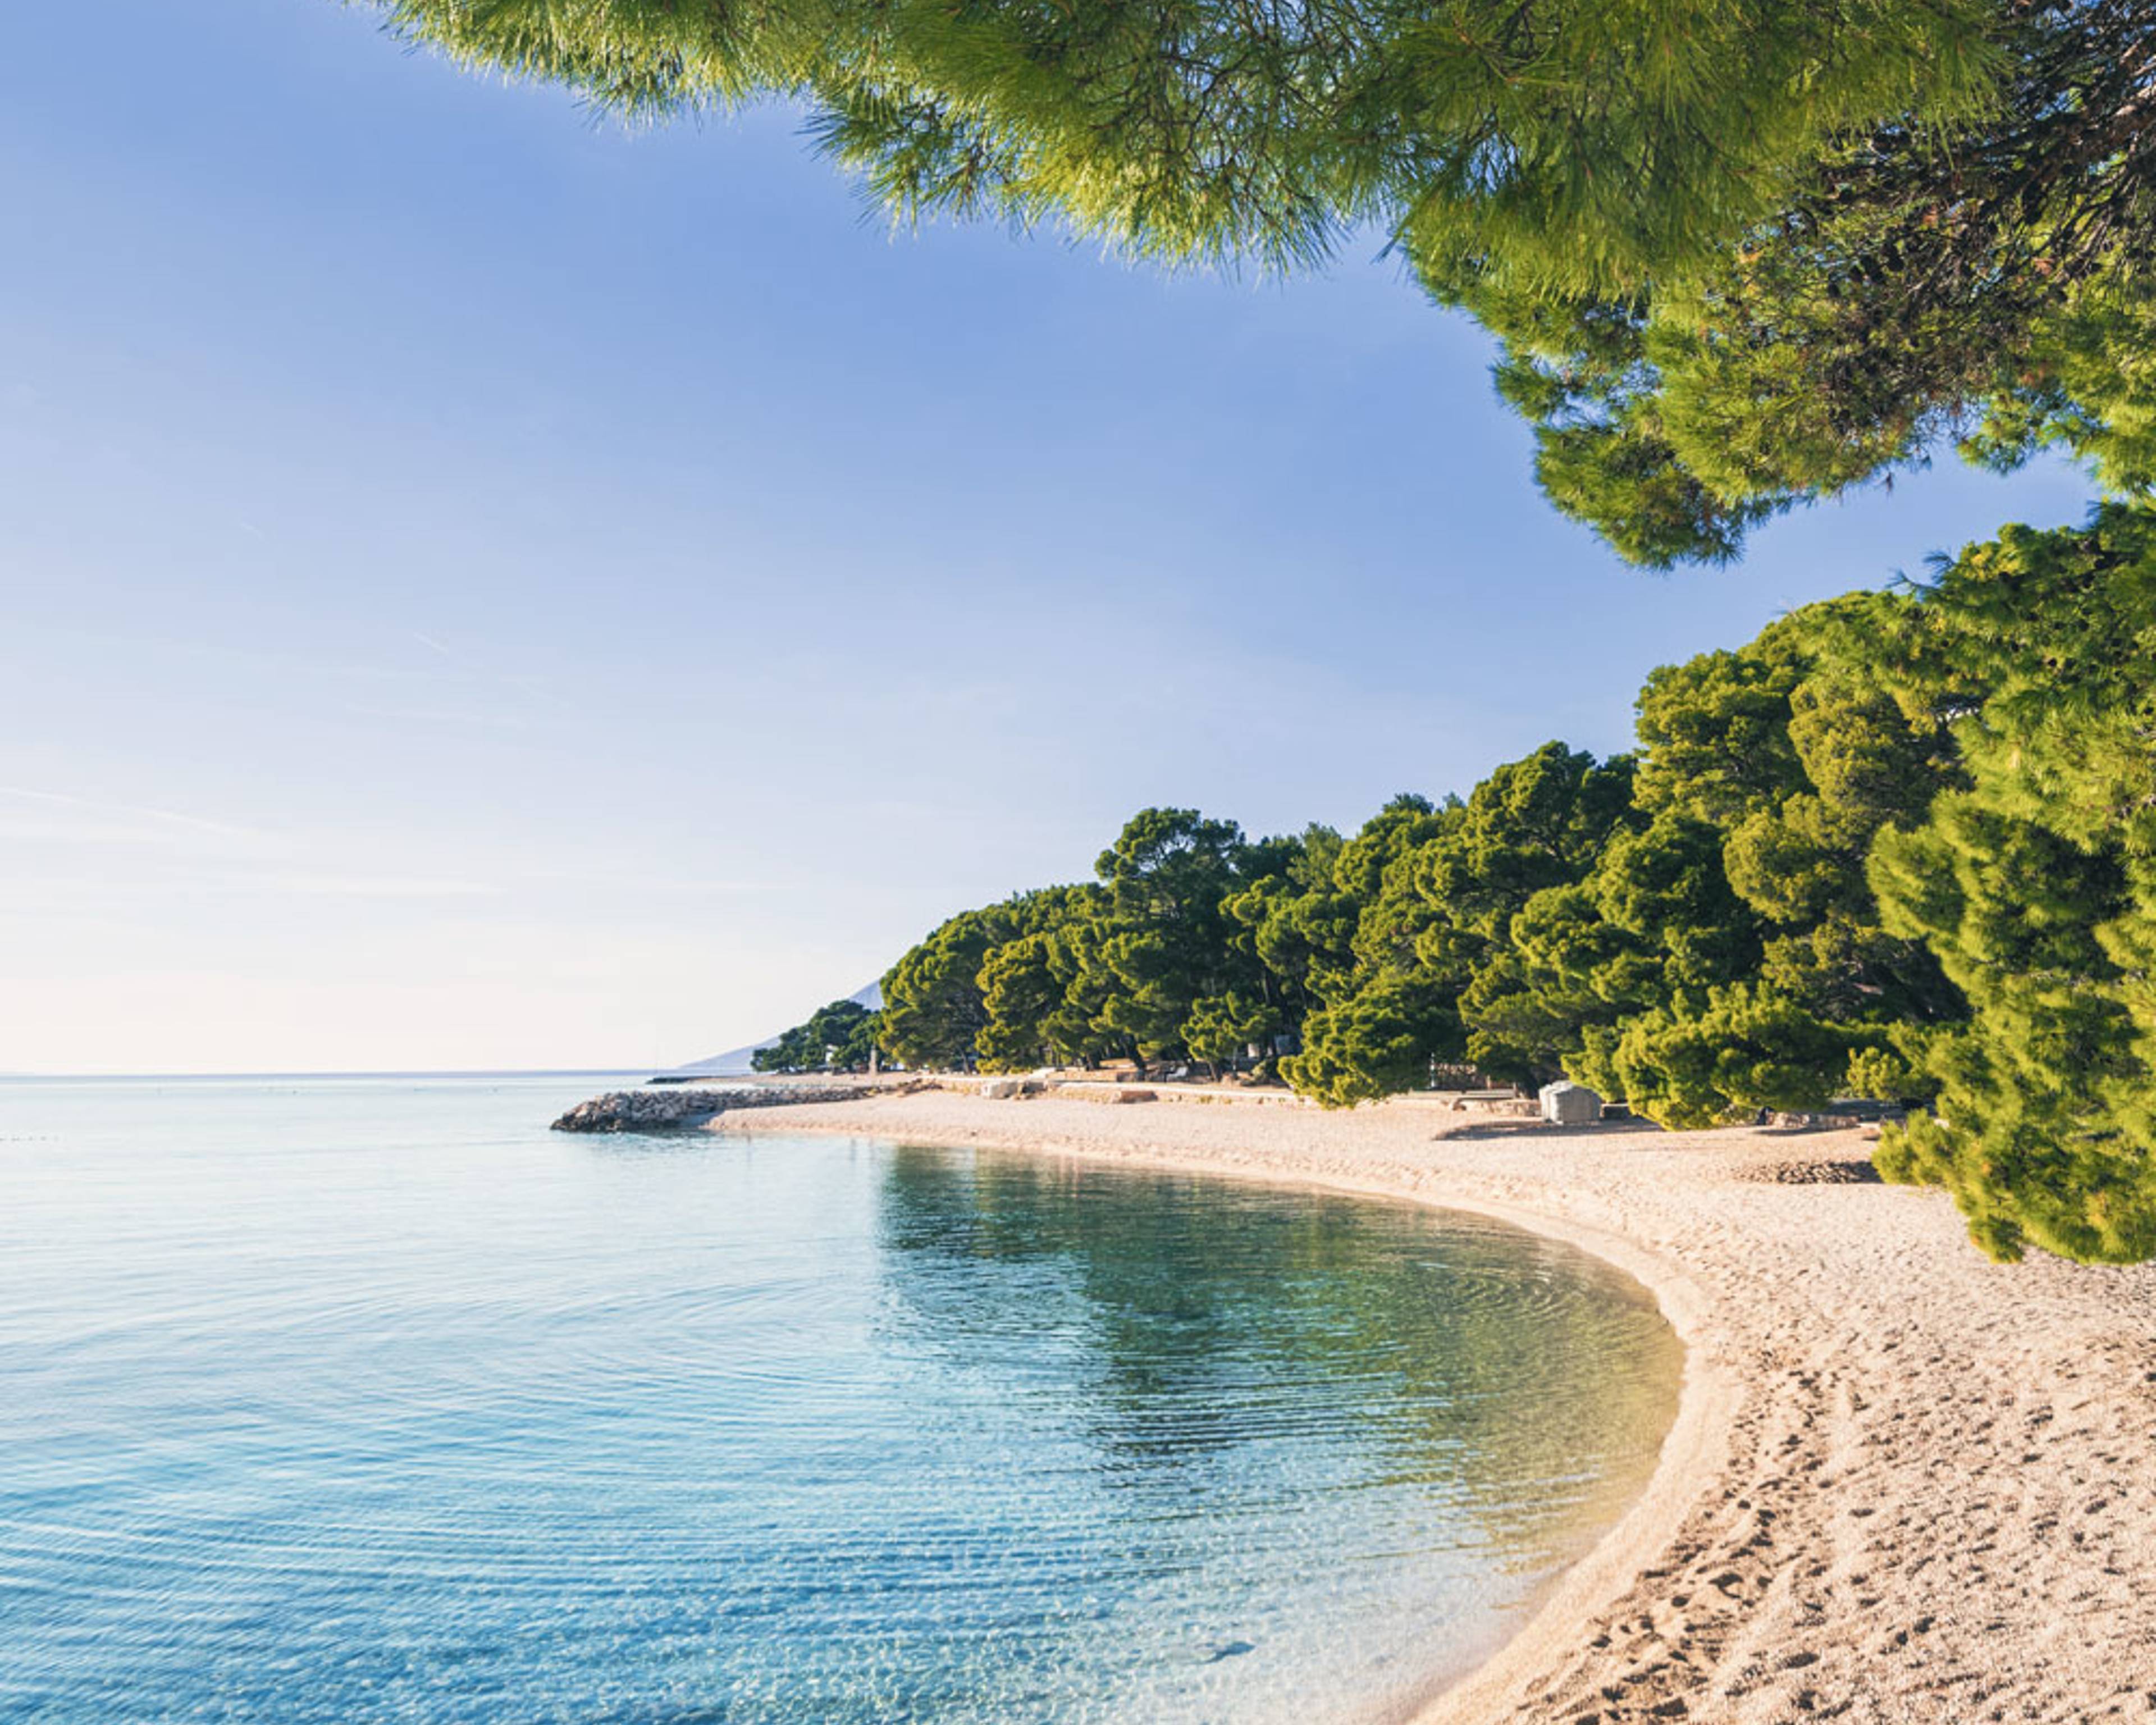 Découvrez les plus belles plages lors de votre voyage en Croatie 100% sur mesure